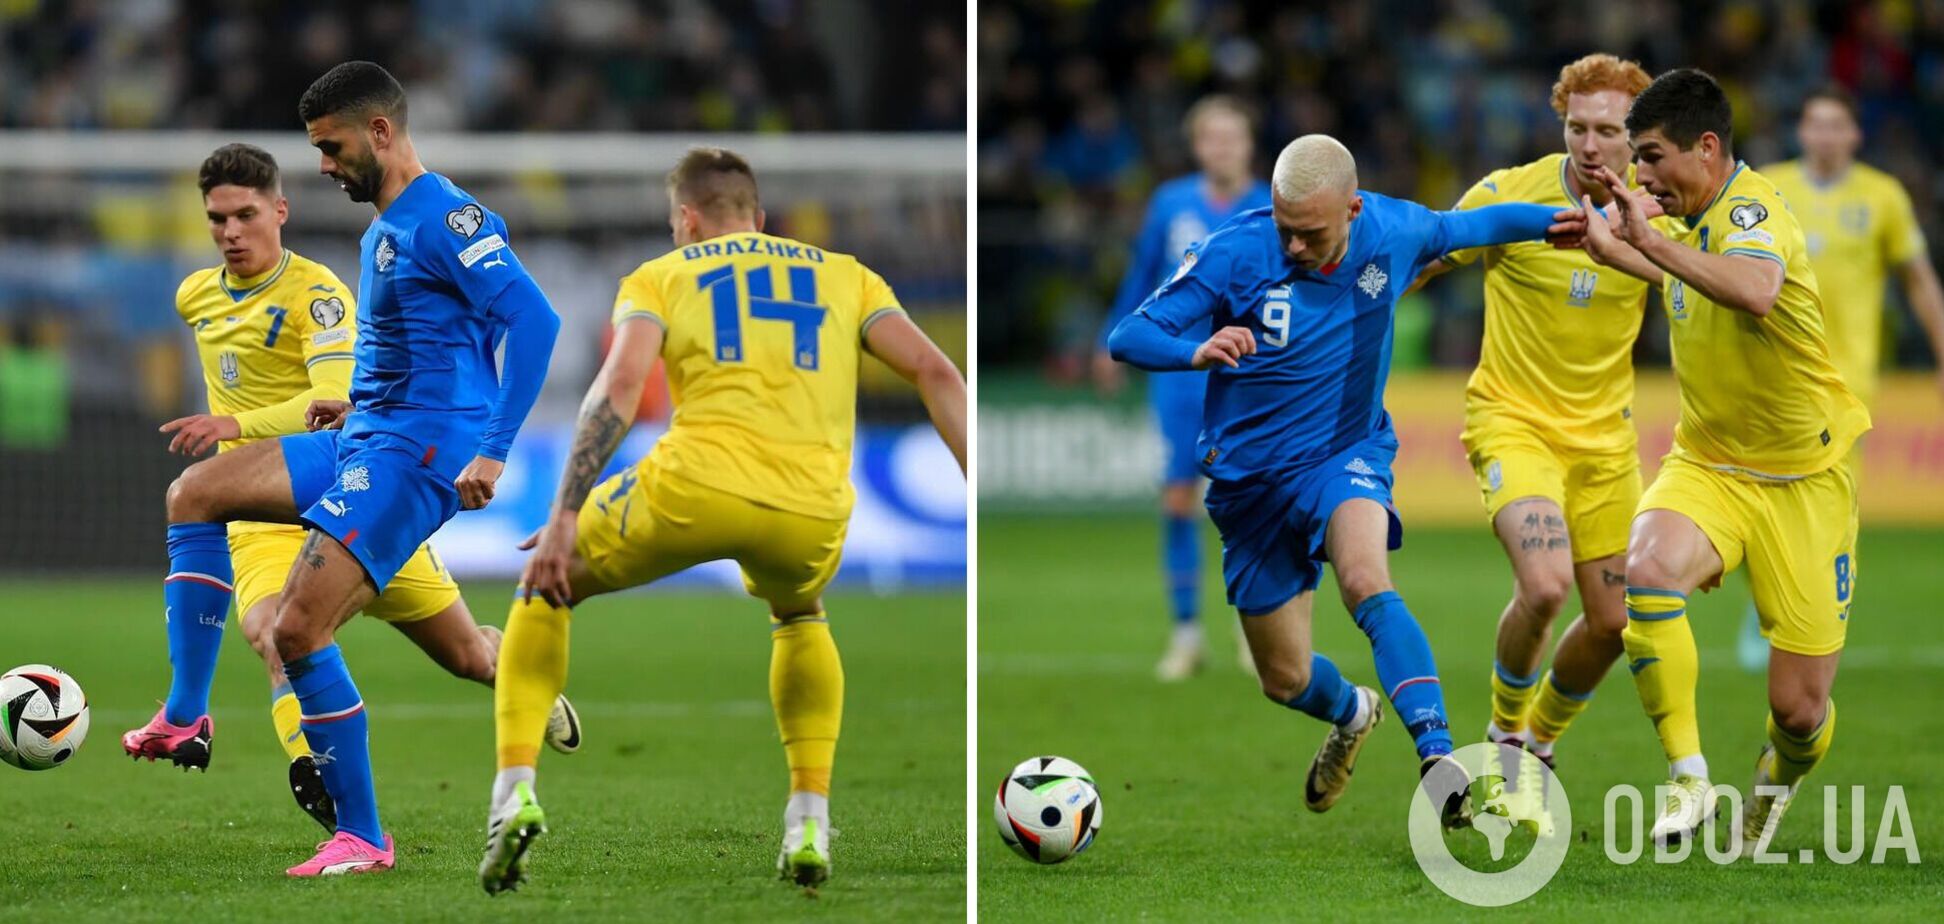 'Убил игру': футболист сборной Исландии эмоционально отреагировал на поражение от Украины